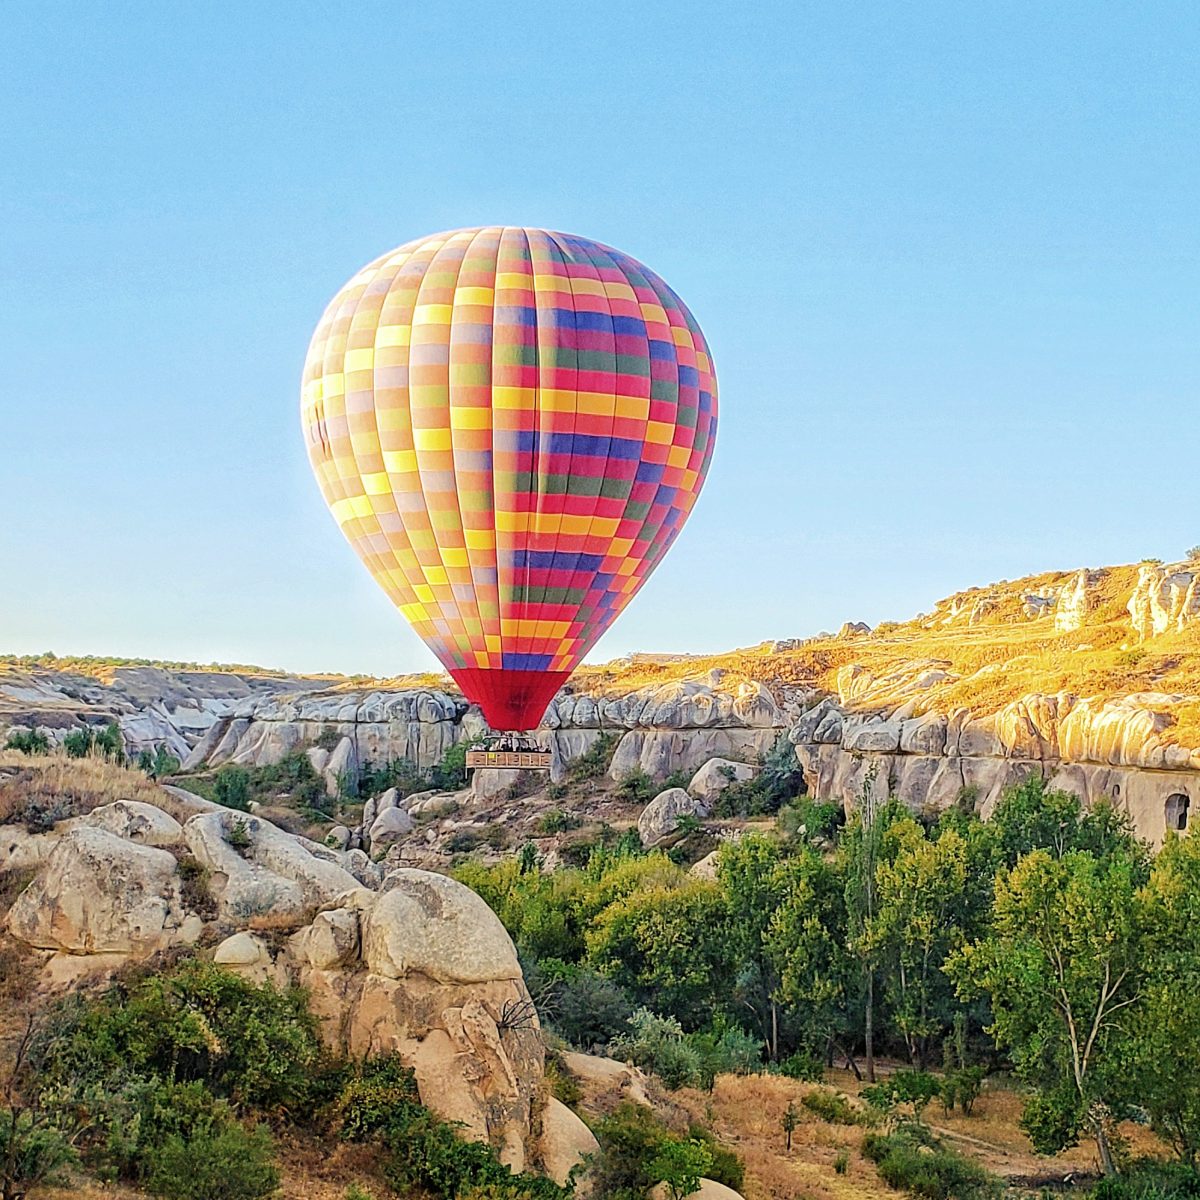 15 Photos to Inspire You to Go on a Hot Air Balloon Ride in Cappadocia